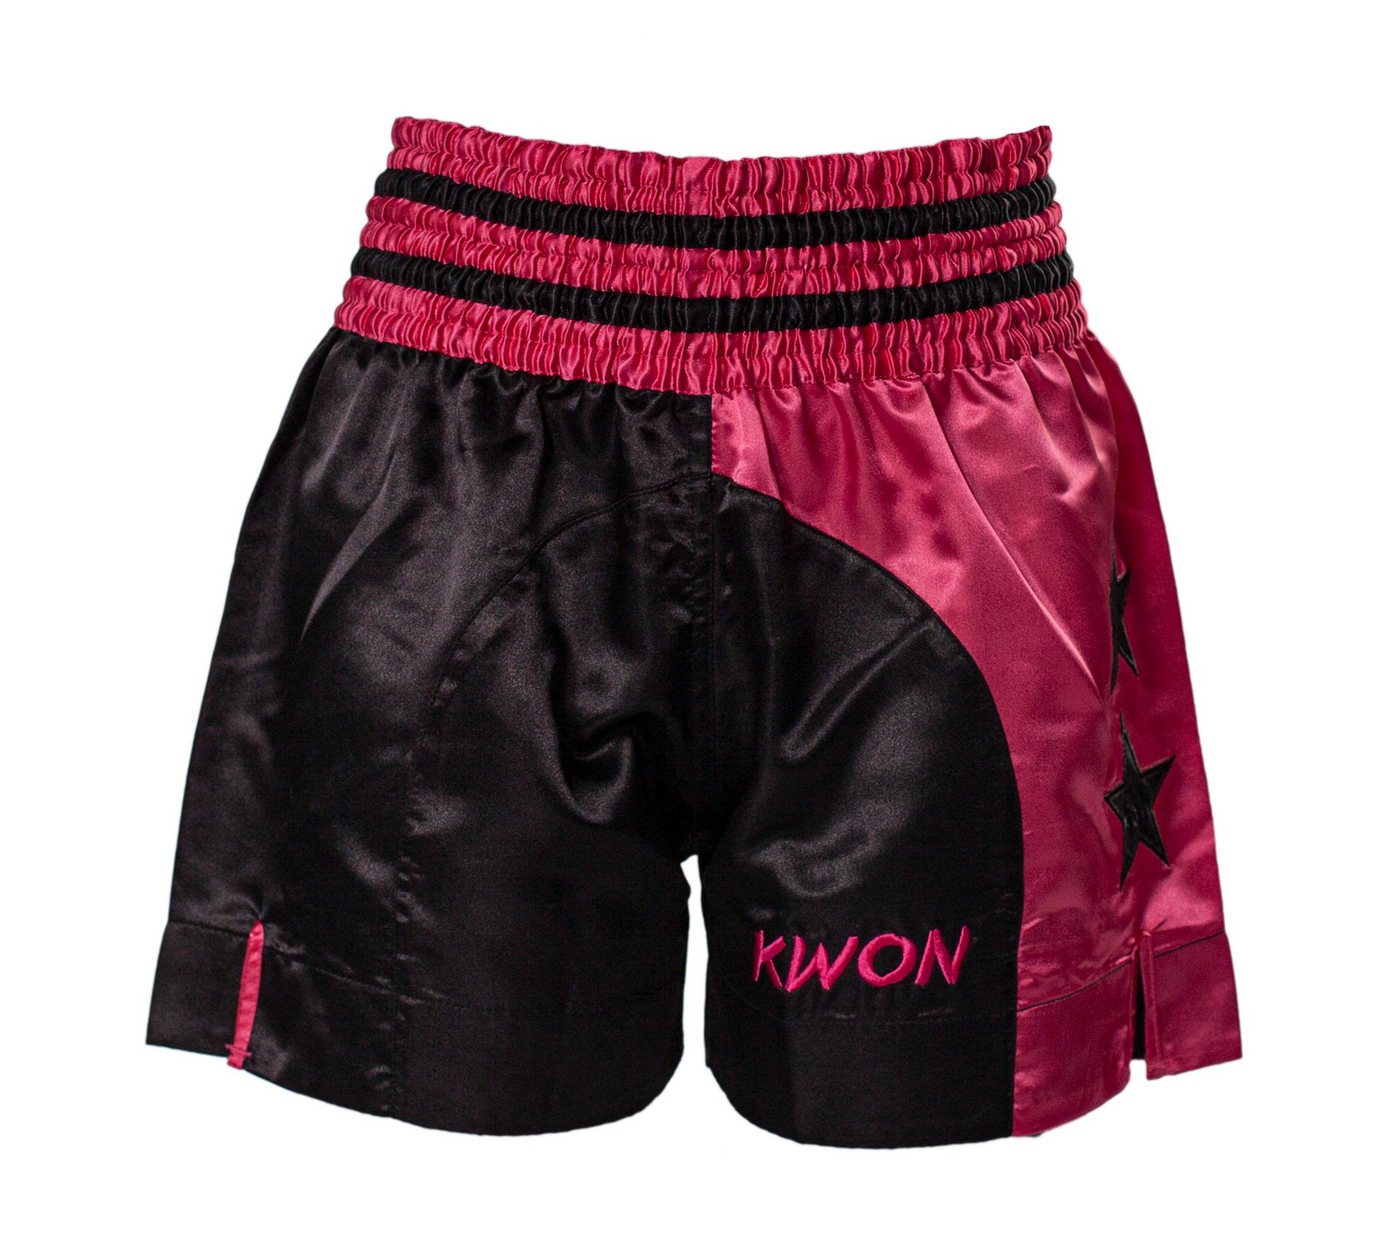 KWON Sporthose Thaiboxhose Damen Girl Muay Thai Shorts Kickboxen kurz magenta pink (Stück) Edler Look, traditioneller Schnitt, Sterne, kräftige Farben von KWON